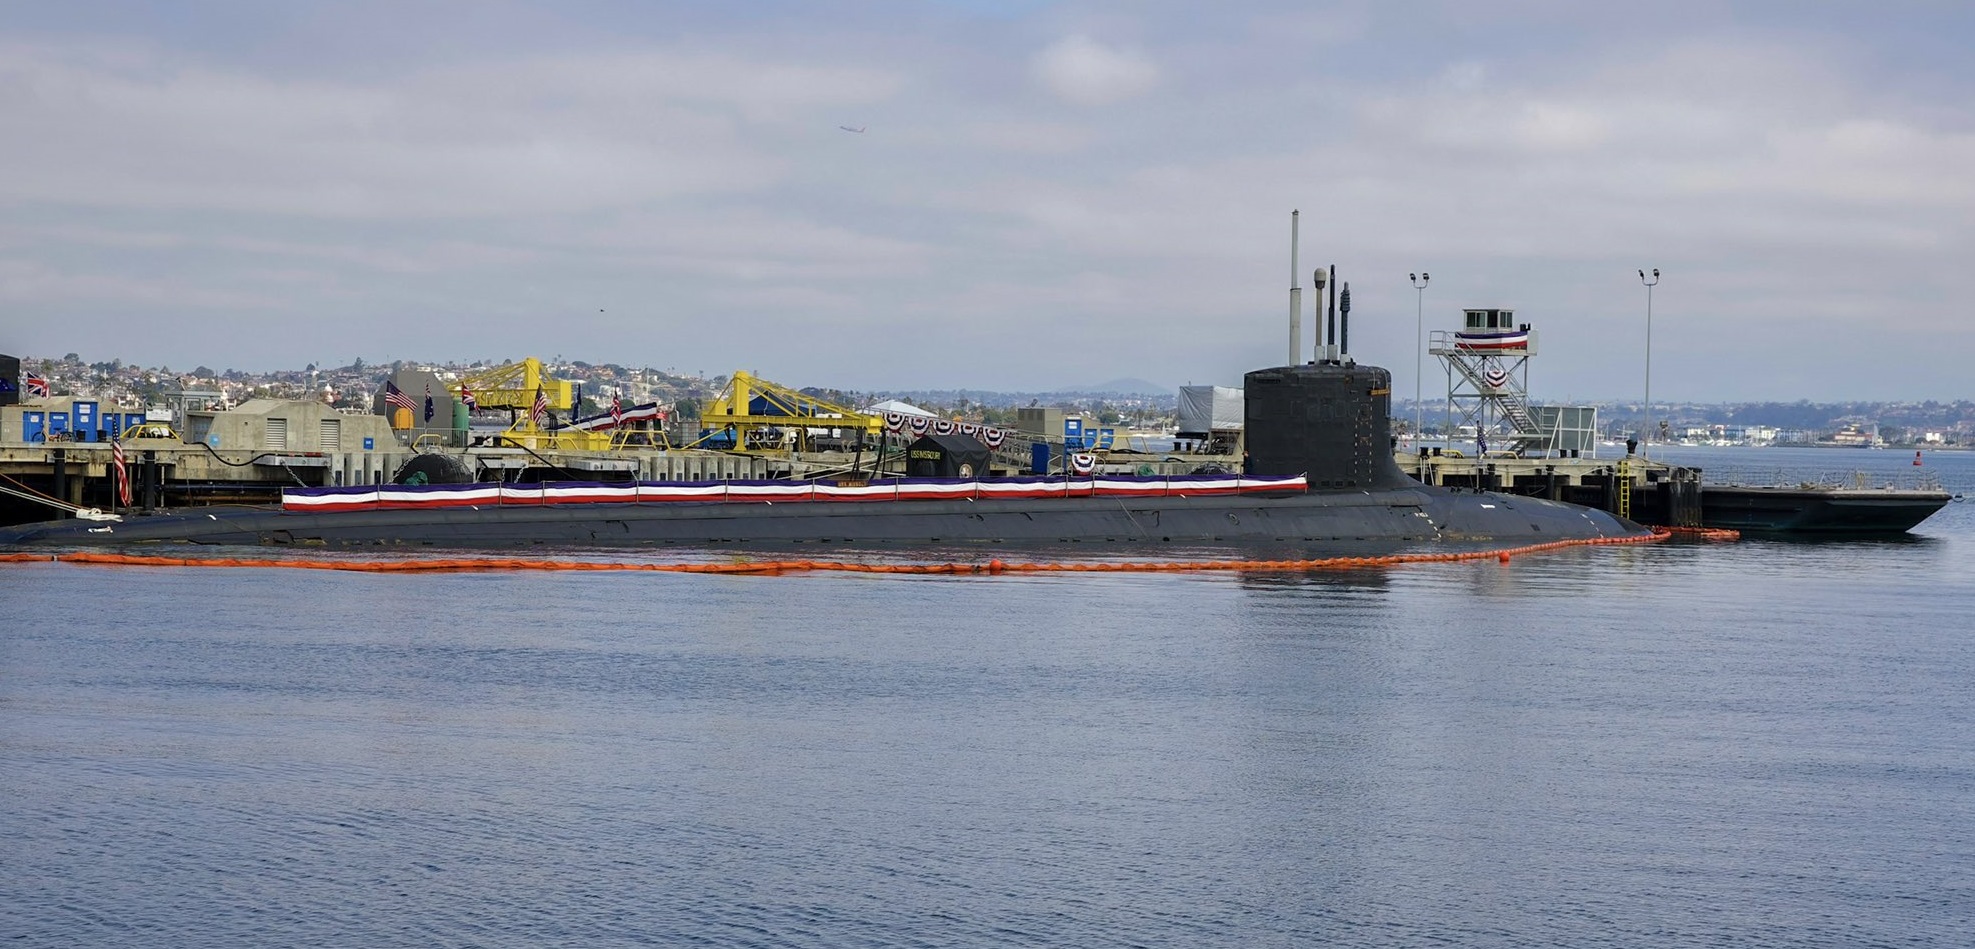 Australia kupi trzy okręty podwodne o napędzie atomowym Virginia i rozpocznie produkcję okrętów podwodnych o napędzie atomowym AUKUS z Wielką Brytanią i USA - nowy projekt wart 245 mld USD